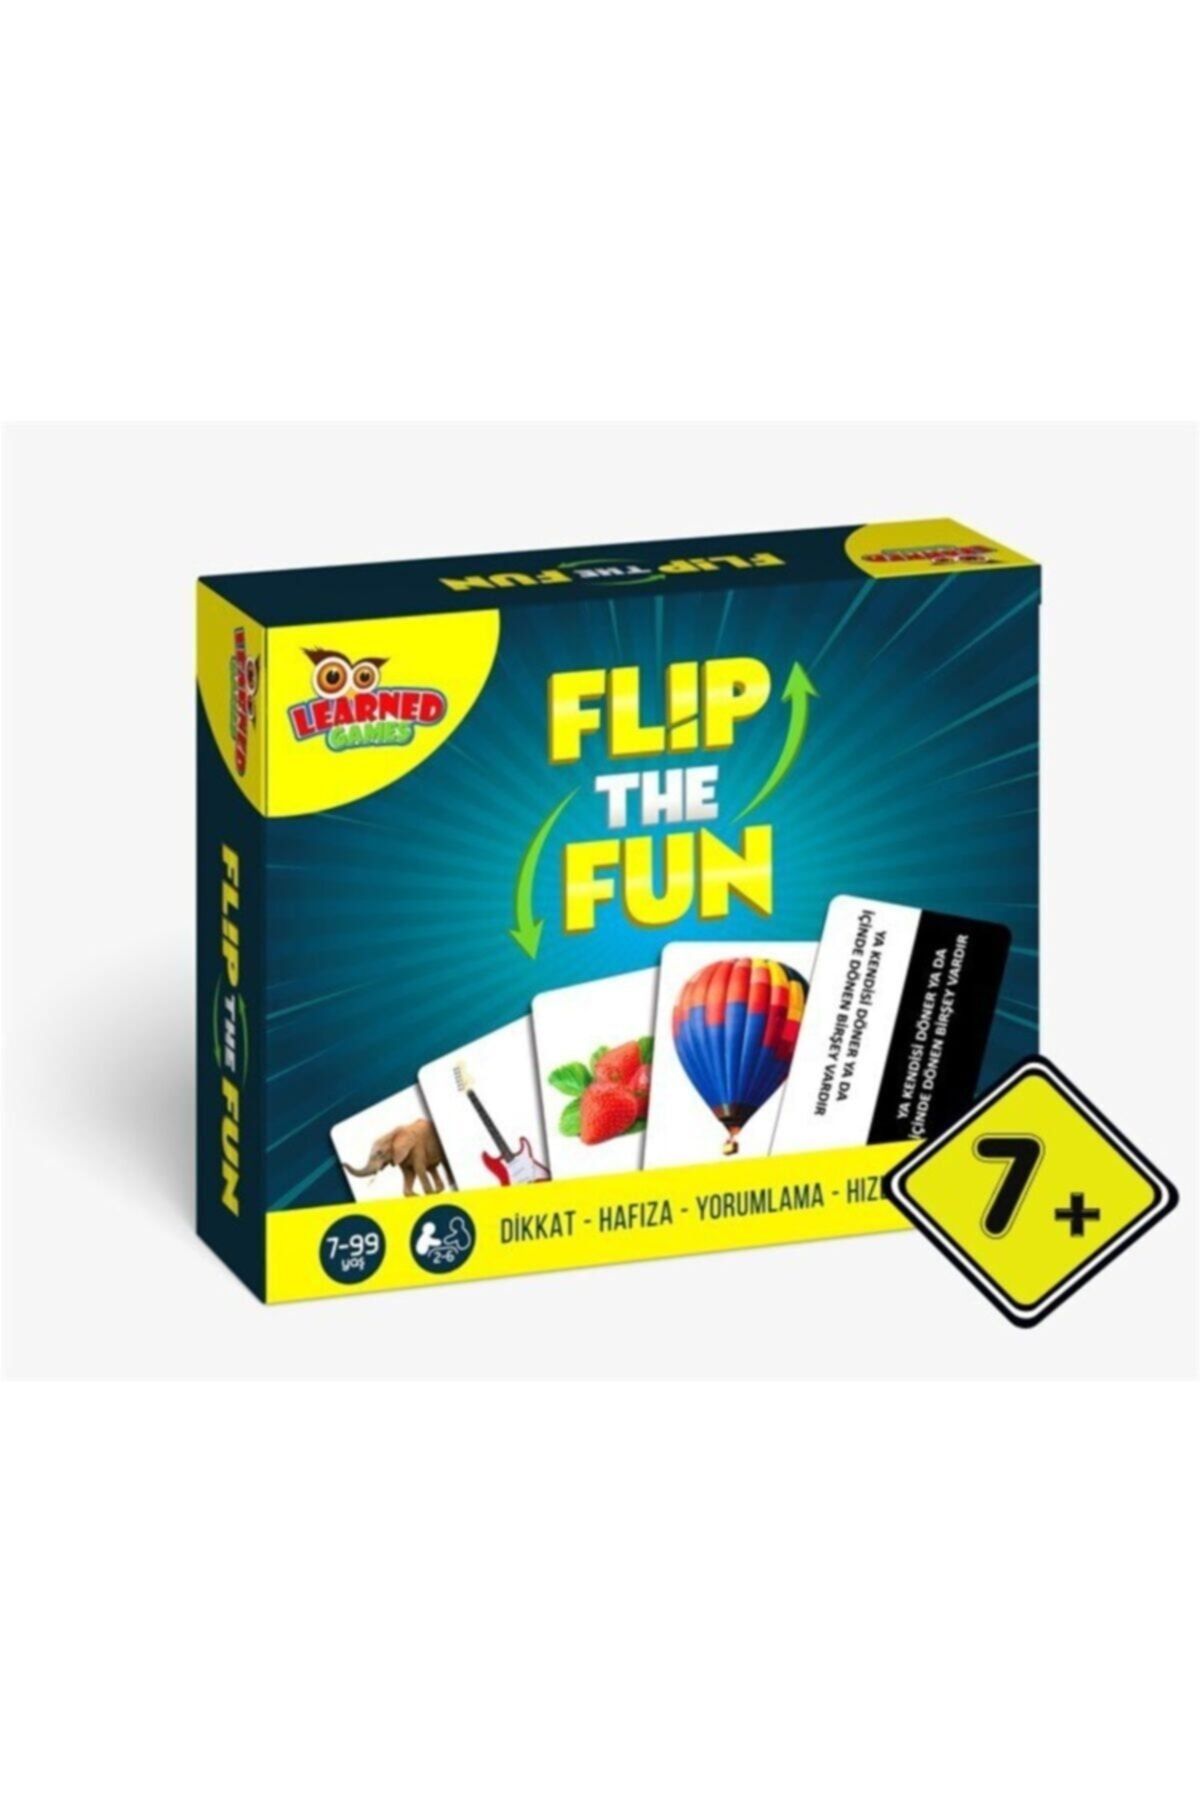 Teknookul Yayınları Flip The Fun Dikkat Ve Hafıza Oyunu Hd77